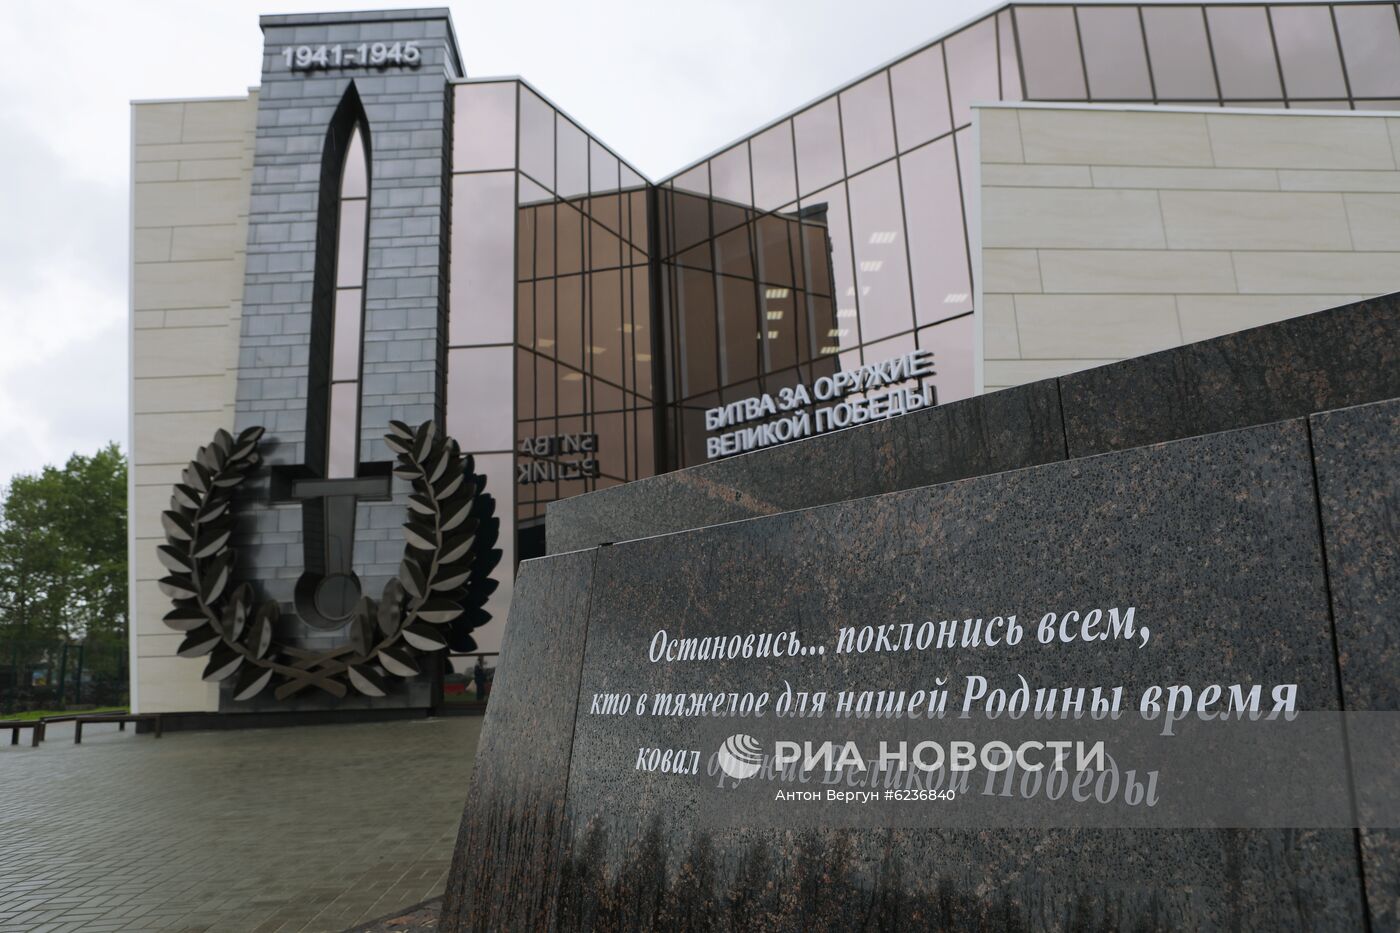 Открытие музея "Битва за оружие Великой Победы" в Белгороде